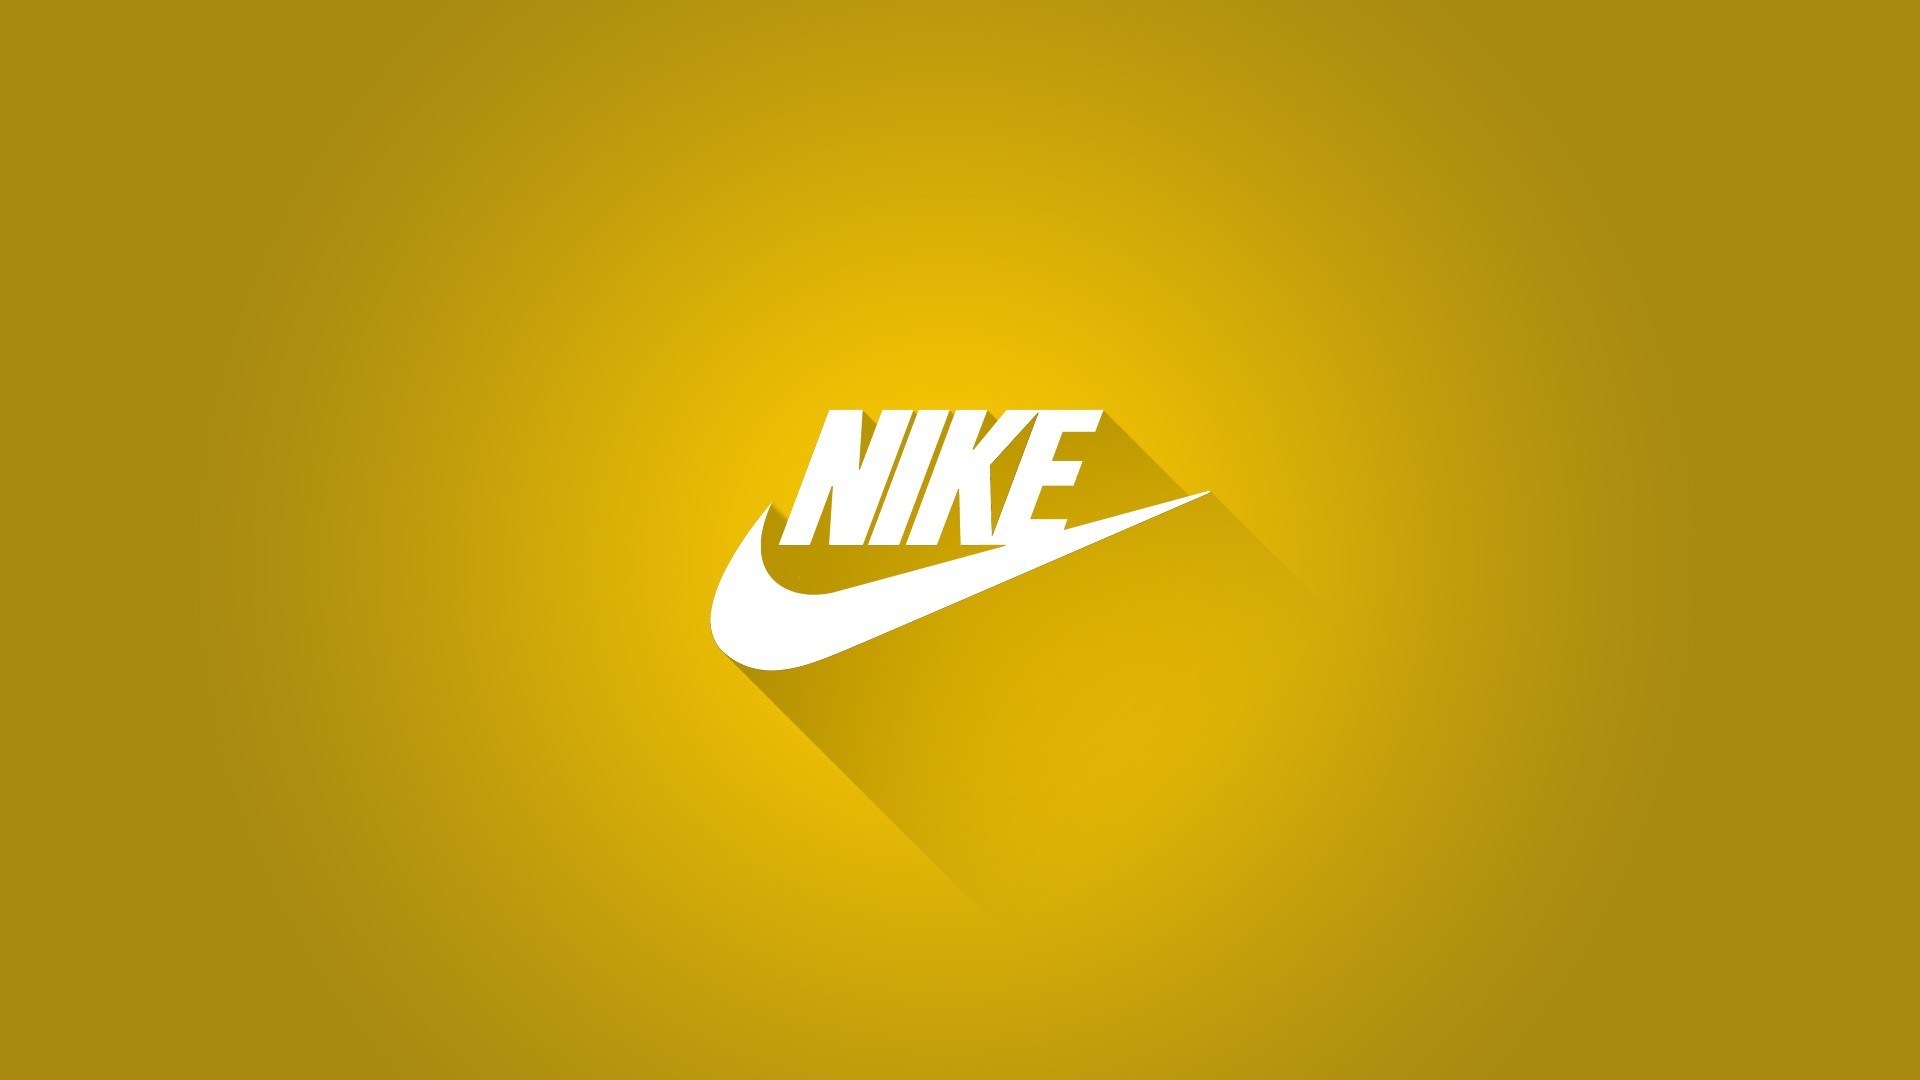 1920x1080 Nike Sports Brand Company Full HD Logo